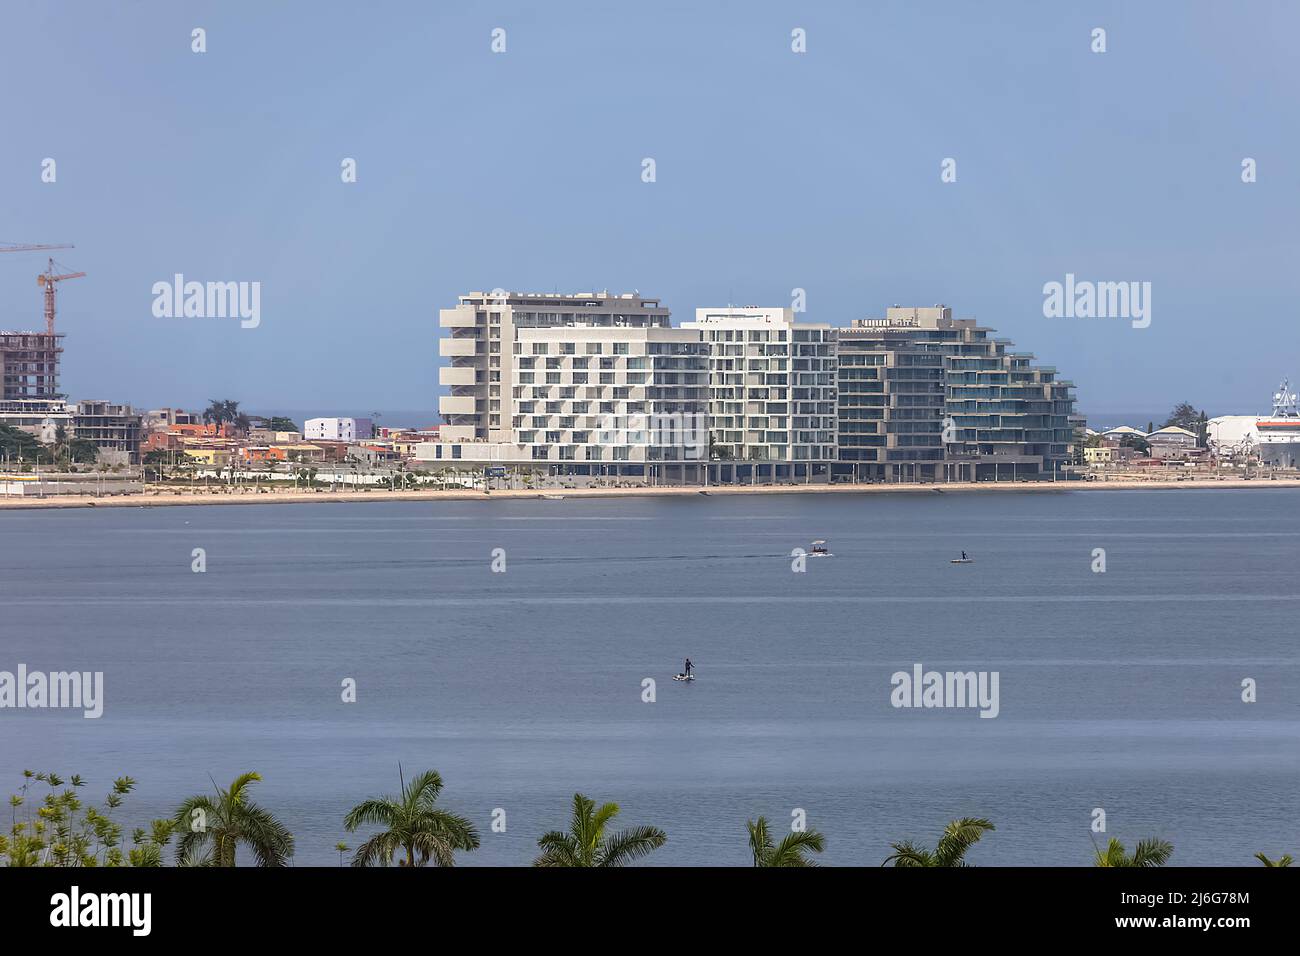 Luanda Angola - 10 13 2021: Baia di Luanda, edifici dall'architettura moderna, edifici marginali e centrali dell'isola di Cabo, Luanda, Angola Foto Stock